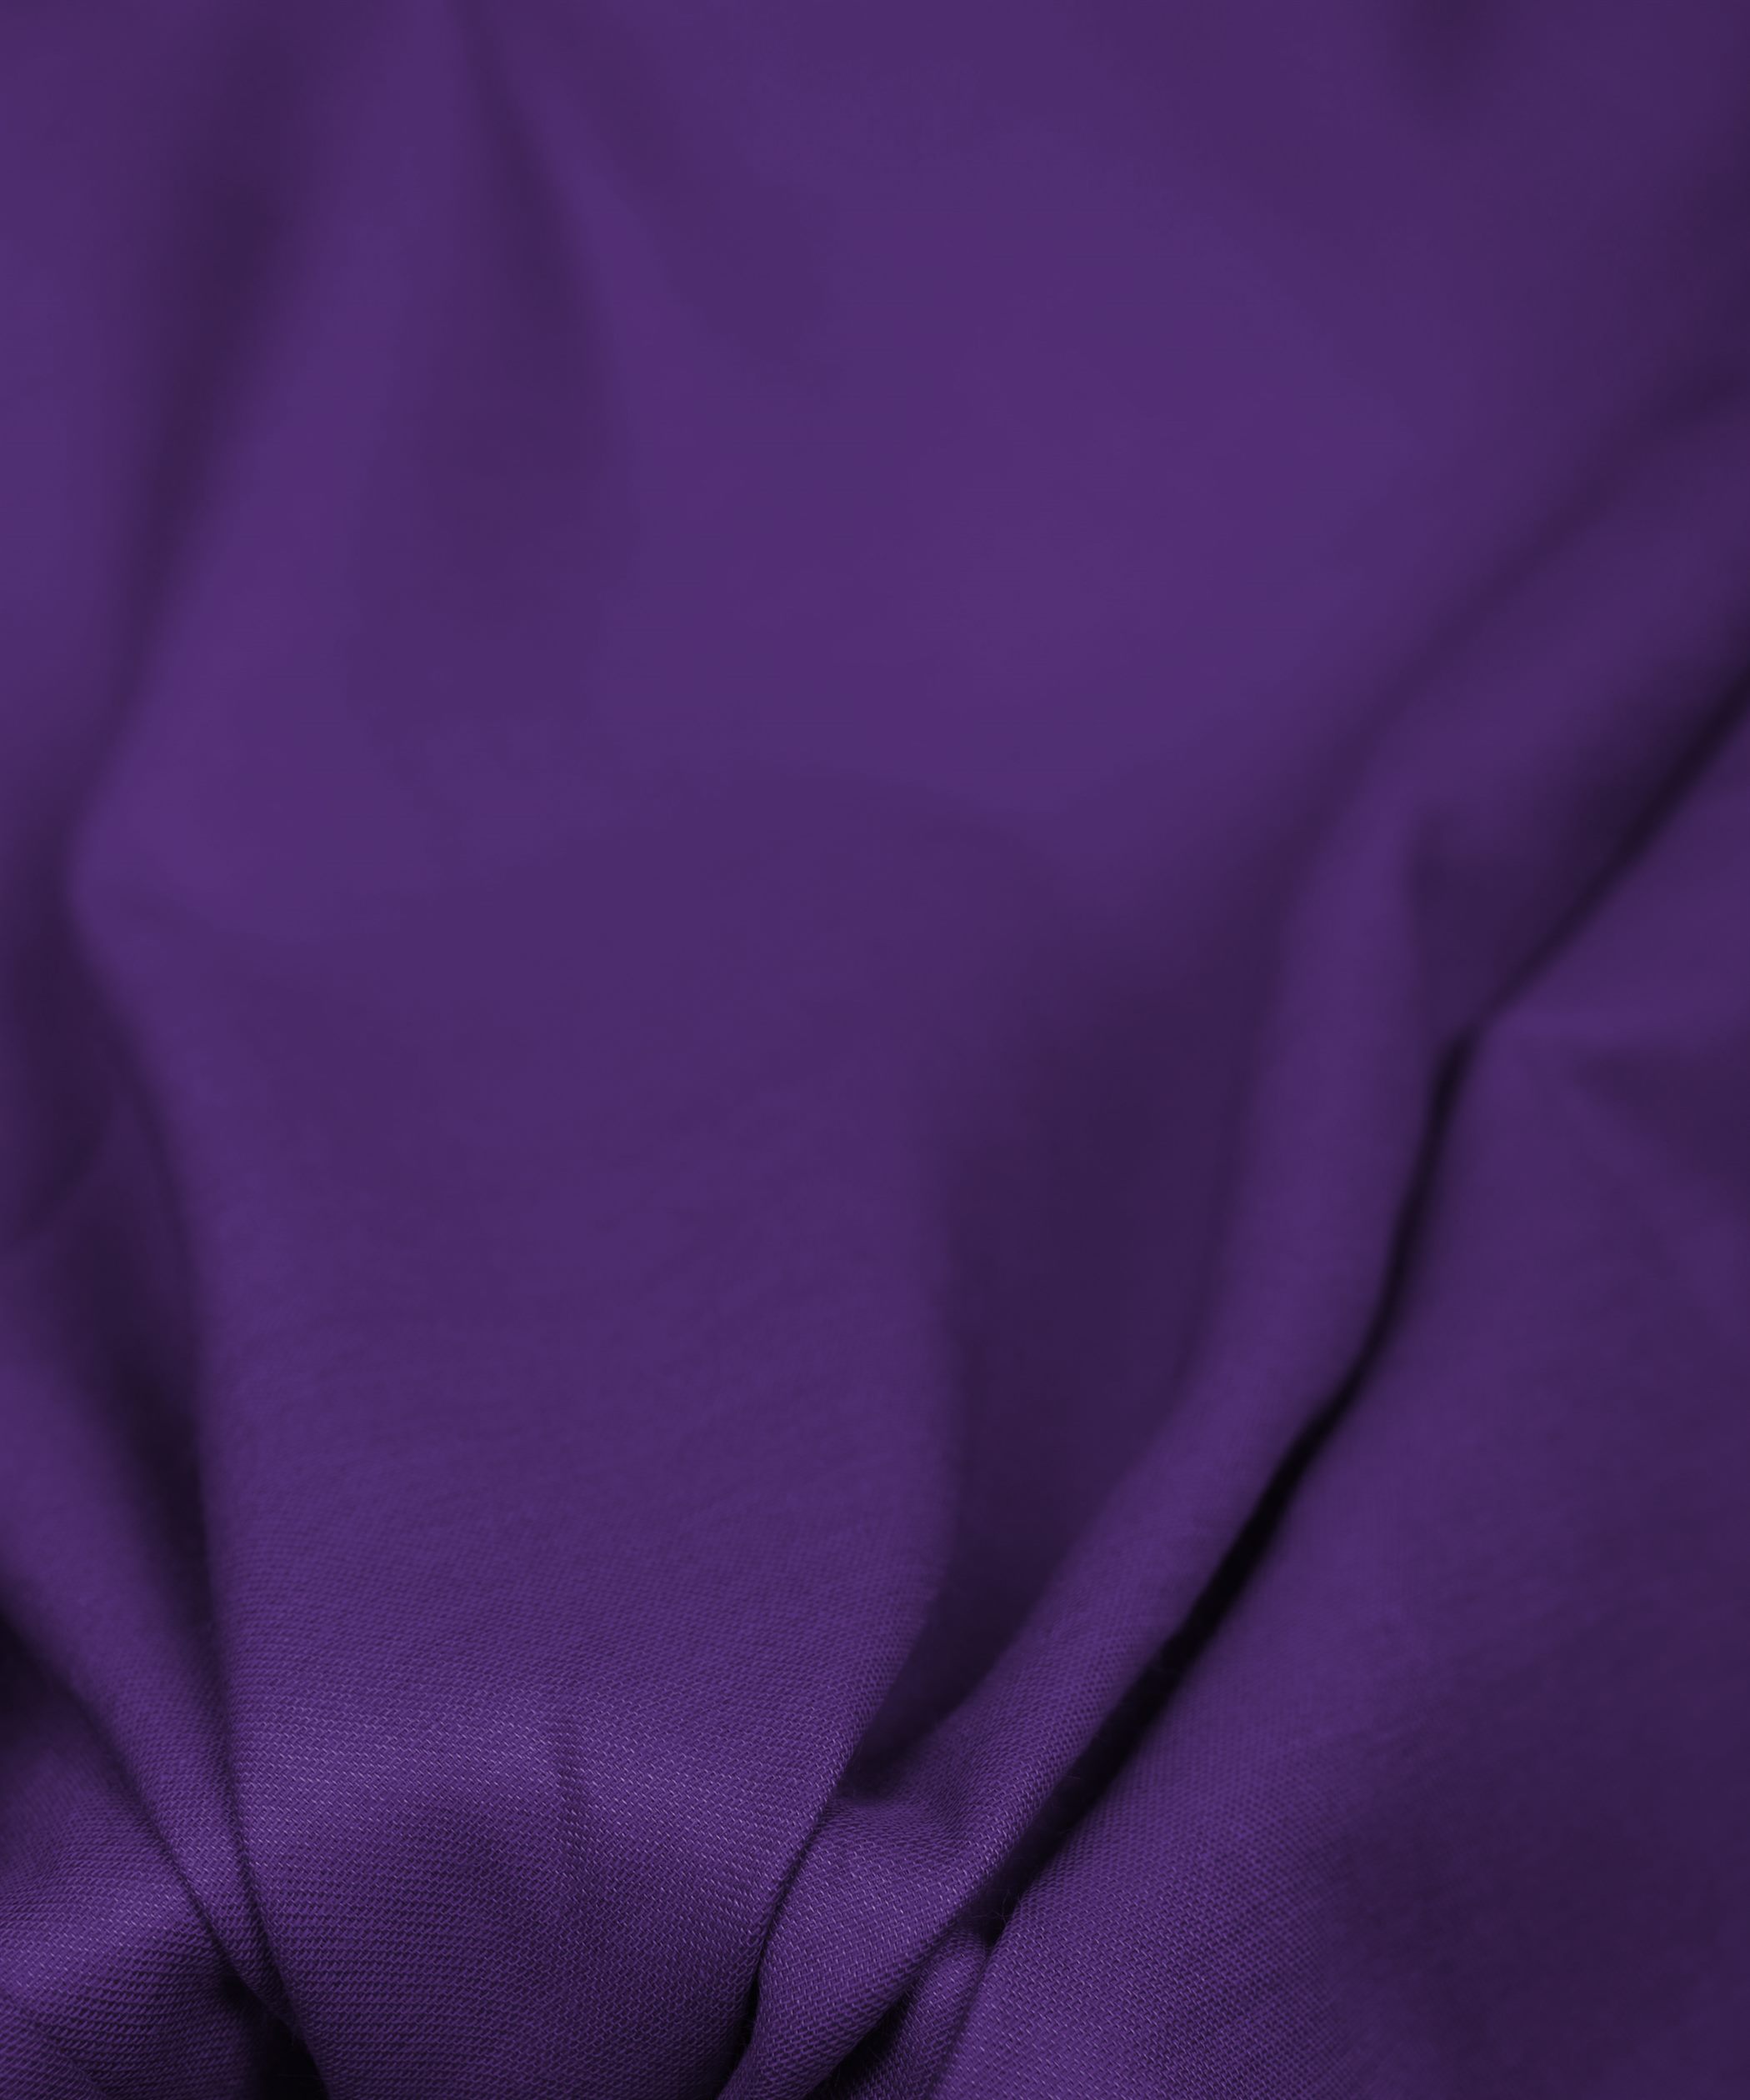 Violet Plain Dyed Cotton Satin Fabric